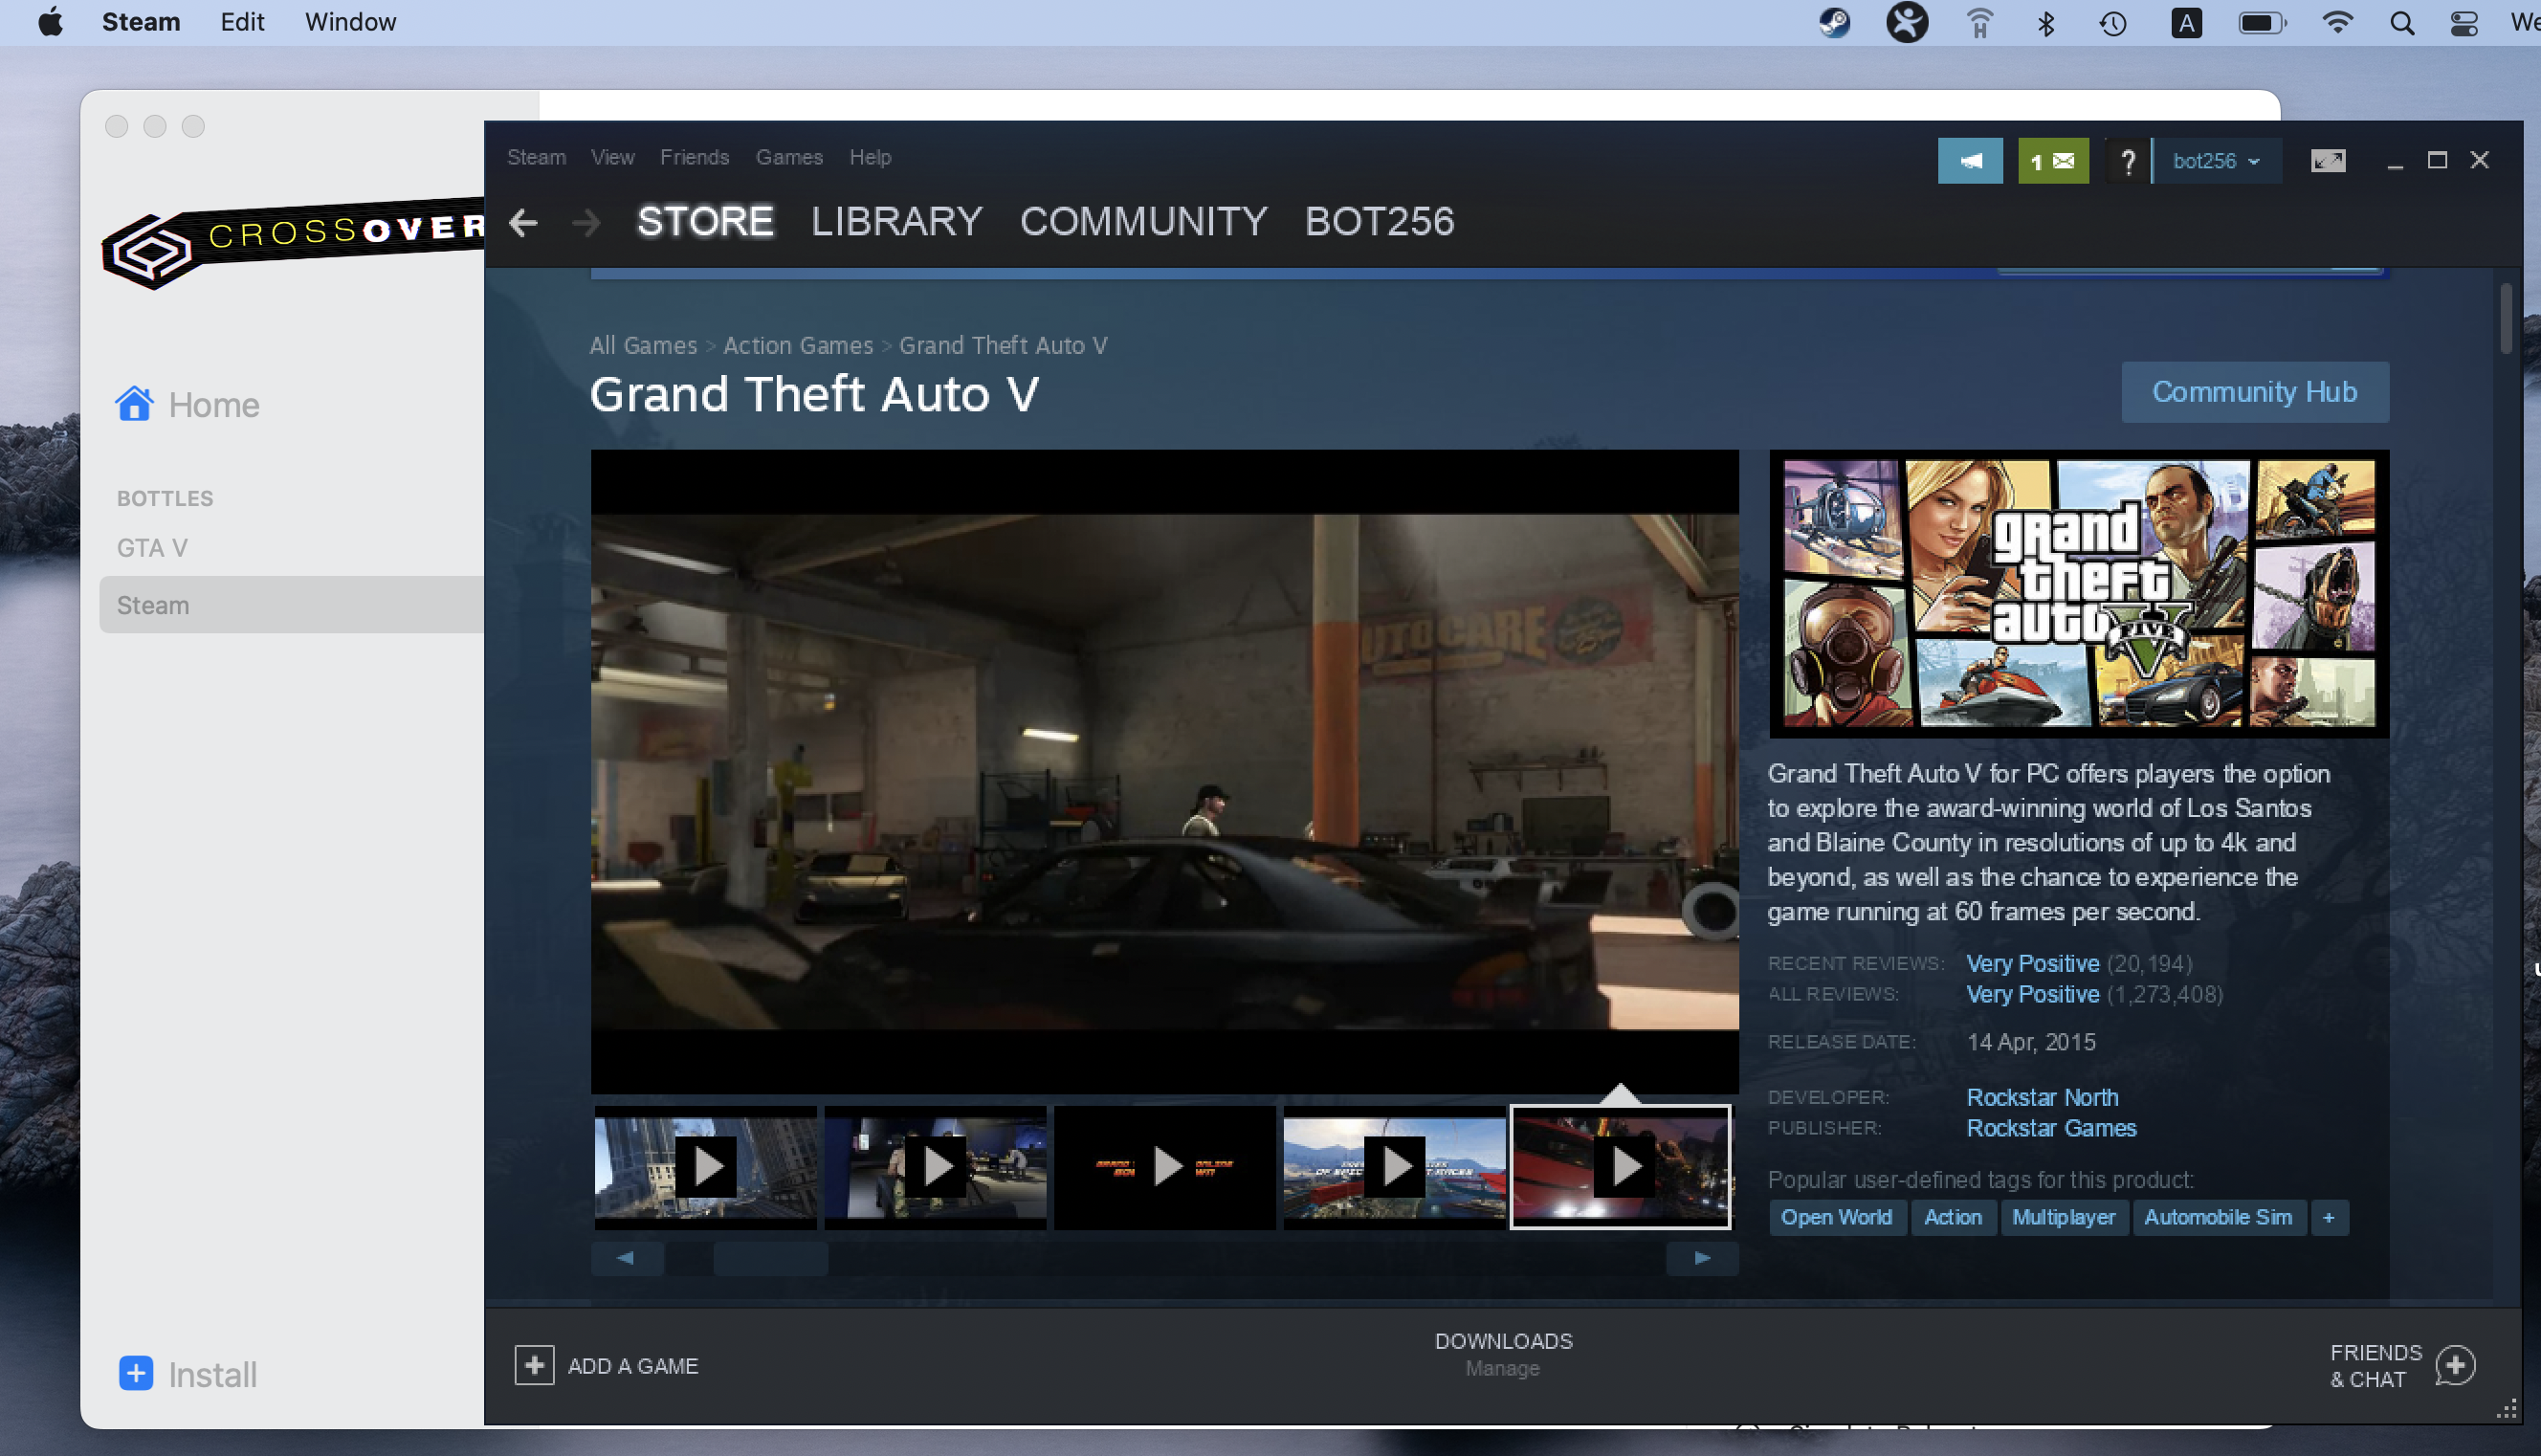 GTA V in Steam